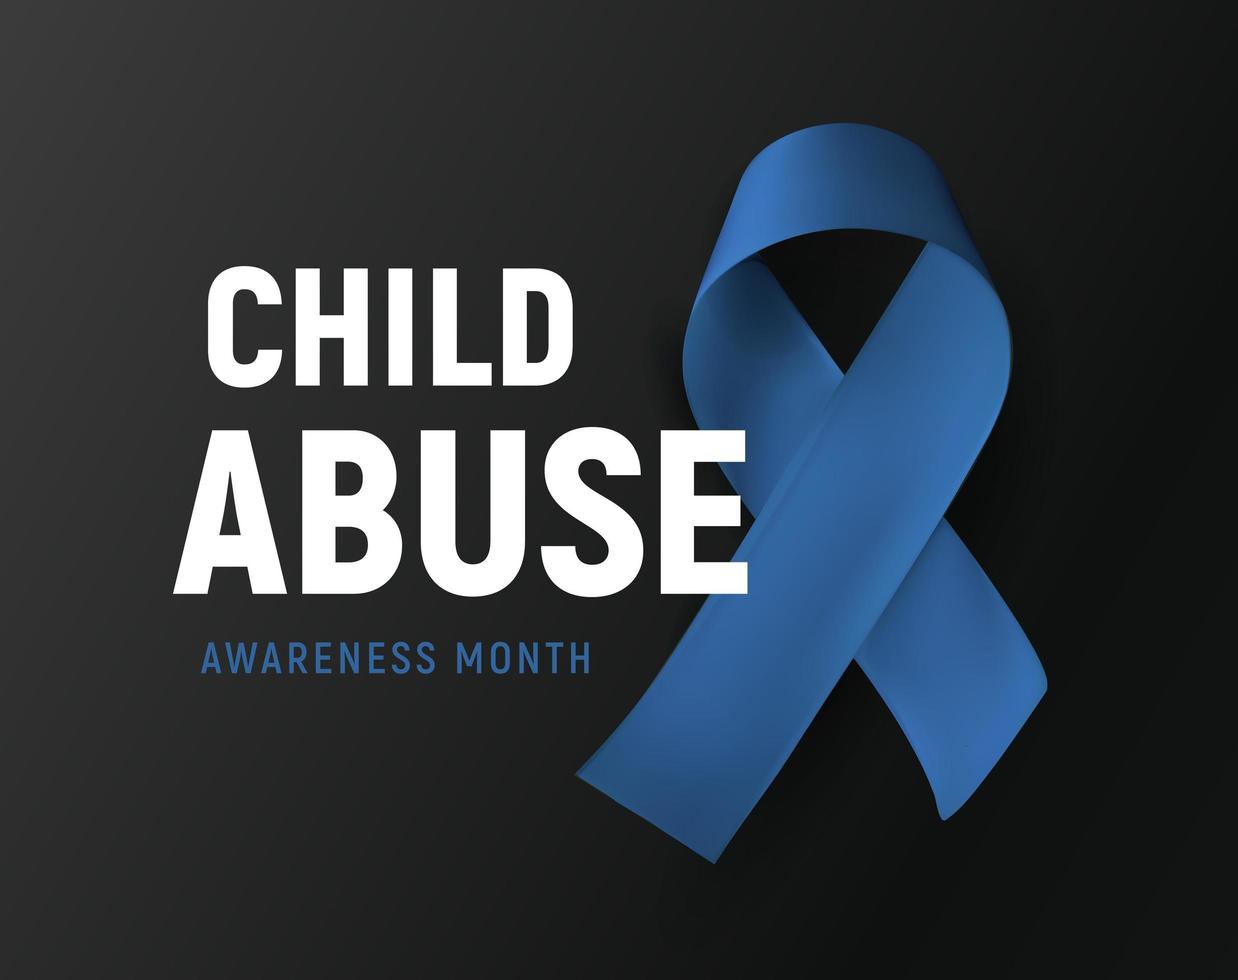 mes de concientización sobre el abuso infantil, logotipo vectorial, símbolo de prevención de la violencia infantil, cinta azul sobre fondo negro, ilustración vectorial vector